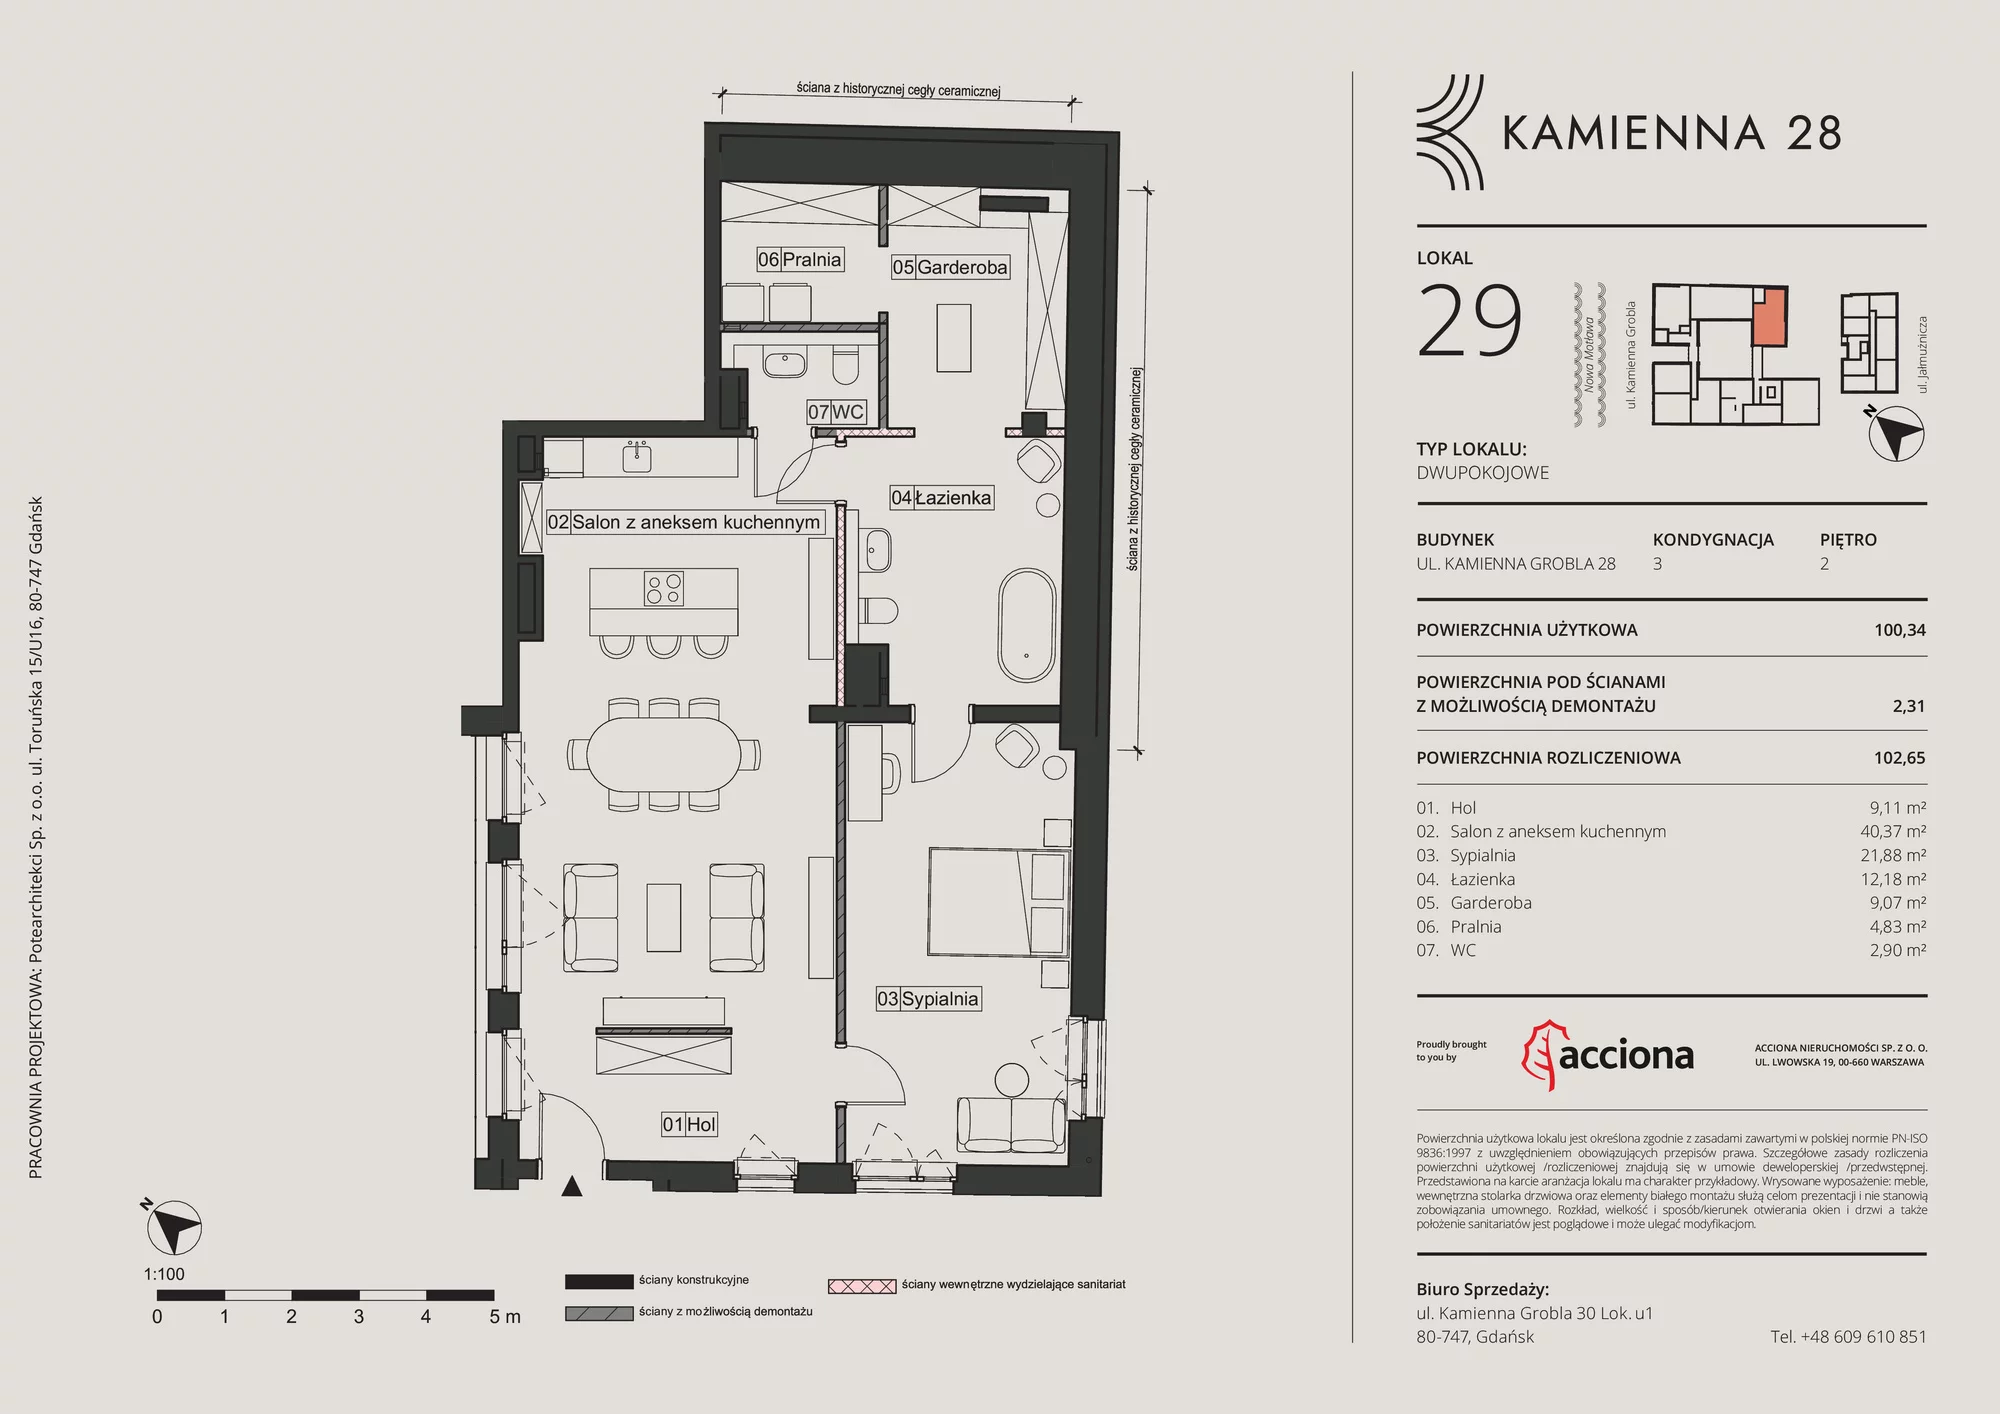 Apartament 102,65 m², piętro 2, oferta nr 28.29, Kamienna 28, Gdańsk, Śródmieście, Dolne Miasto, ul. Kamienna Grobla 28/29